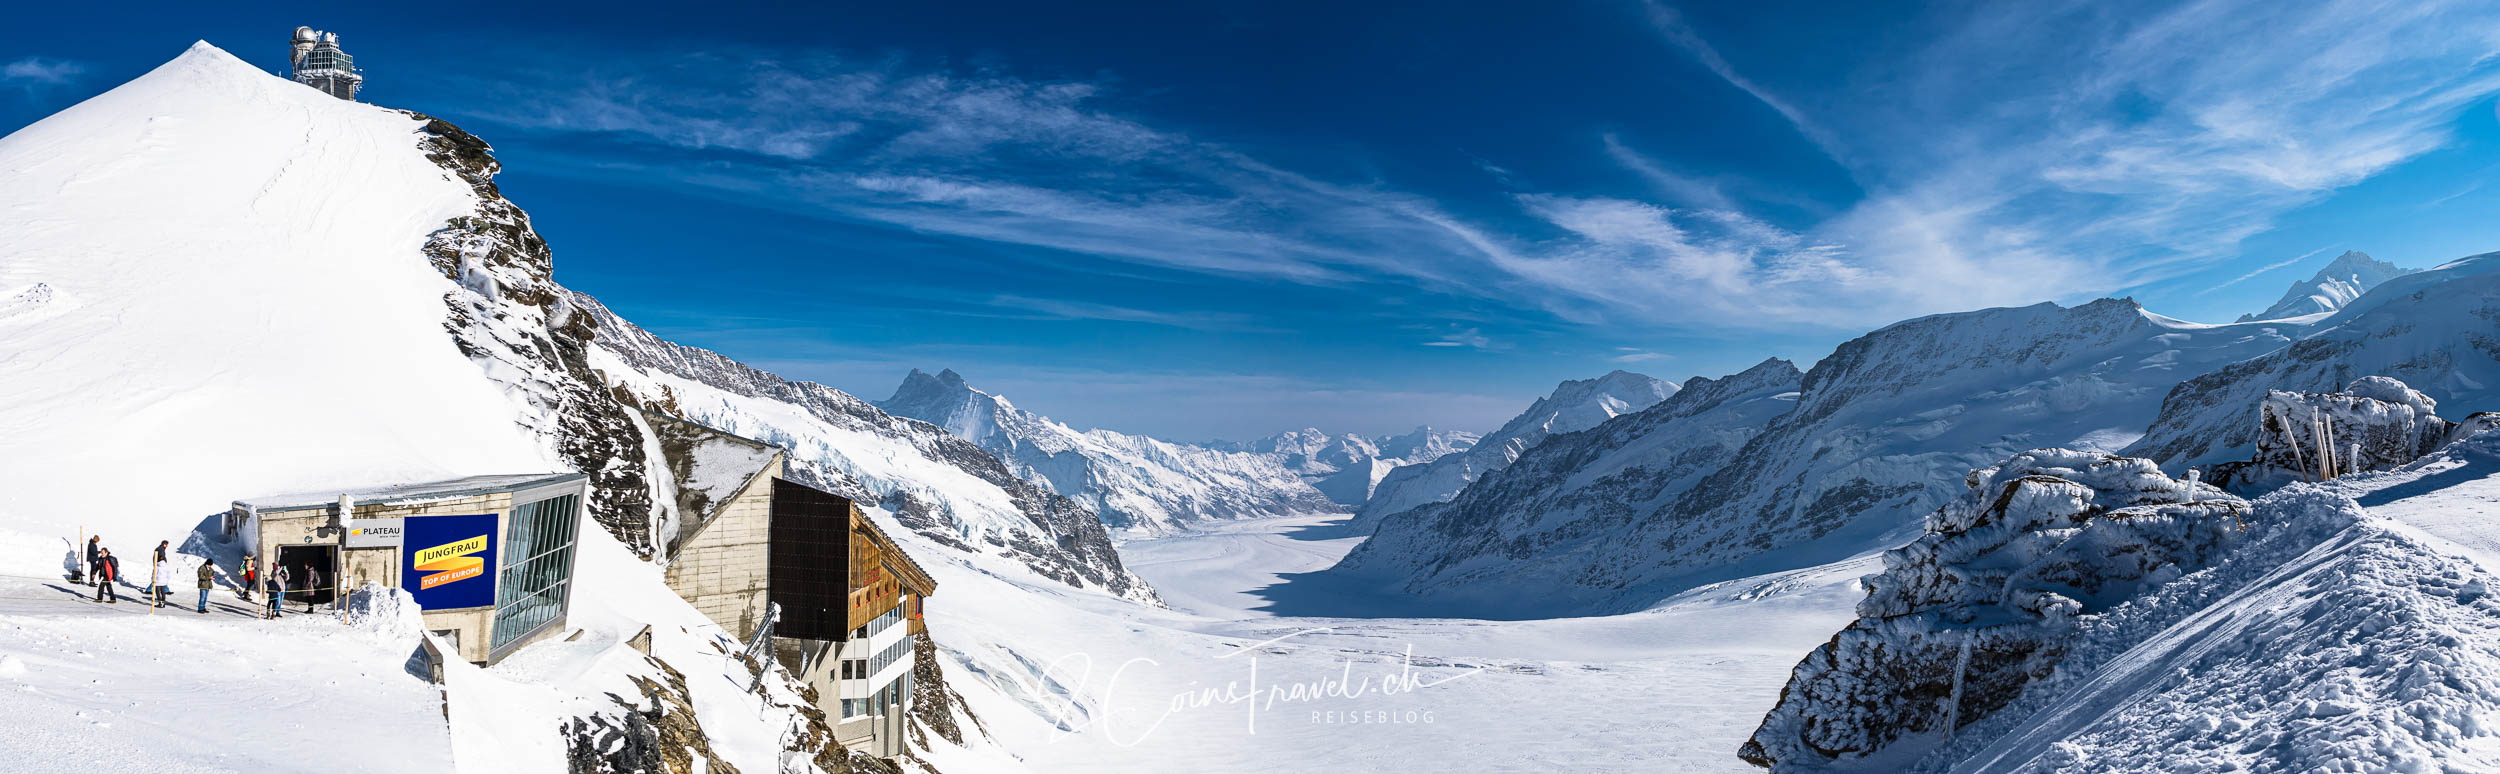 Jungfraujoch Panorama Jungfraufirn